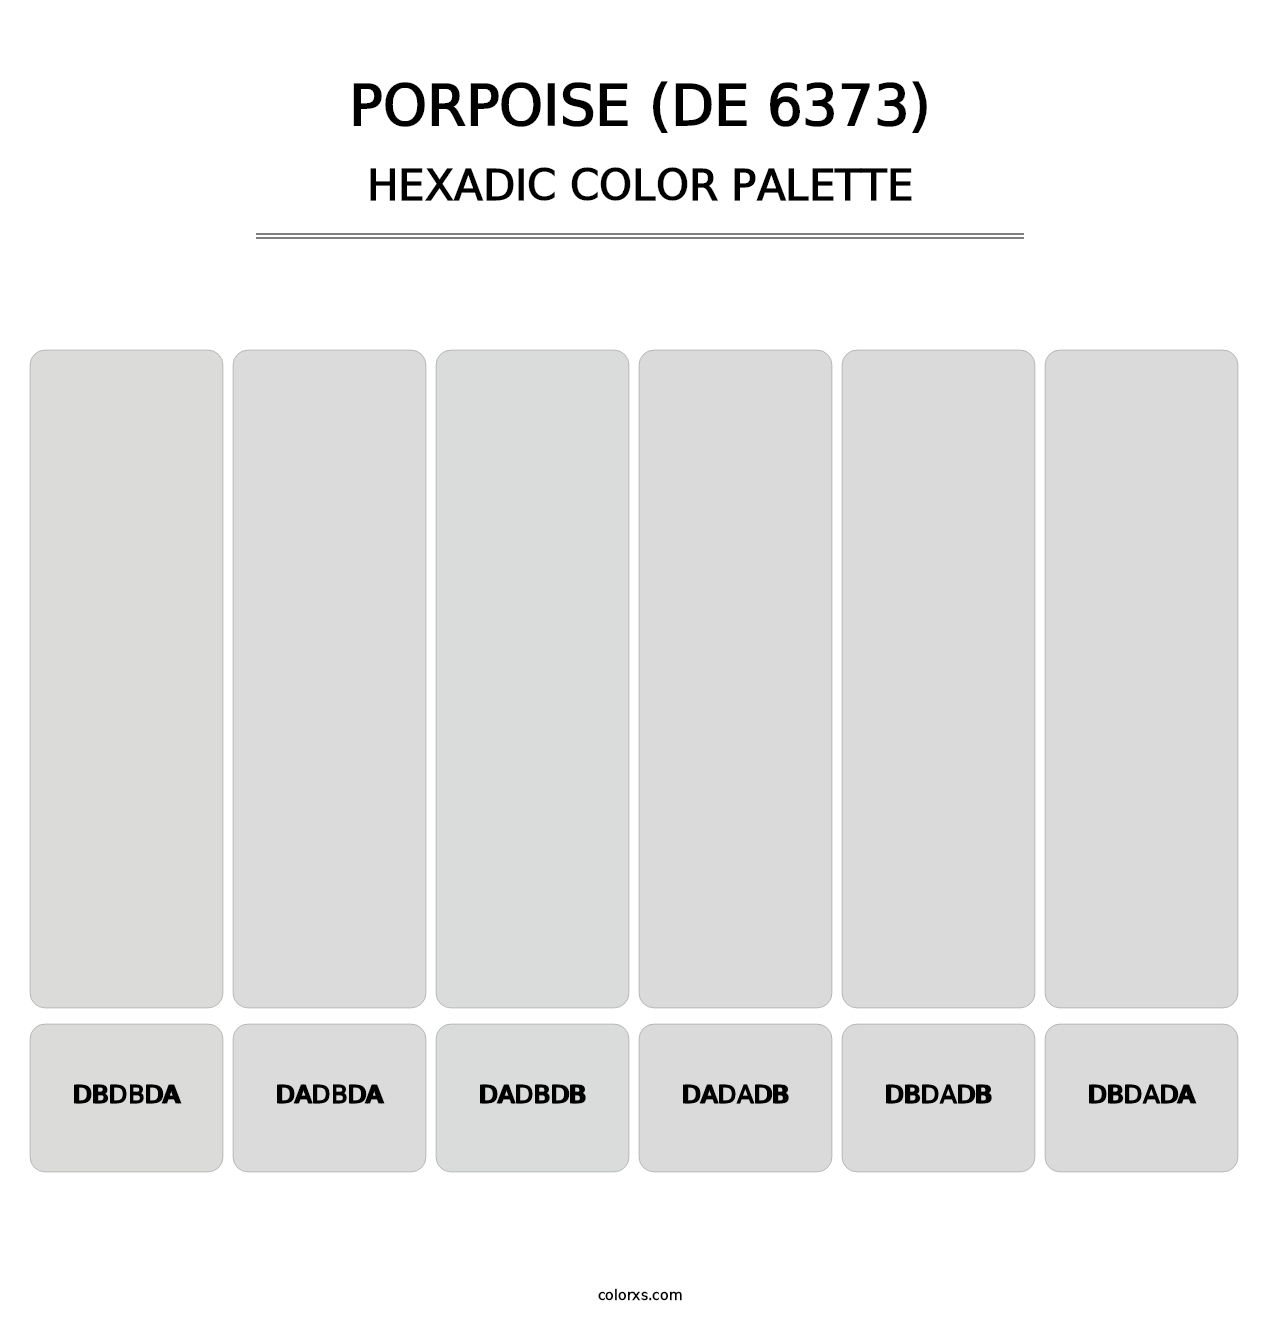 Porpoise (DE 6373) - Hexadic Color Palette